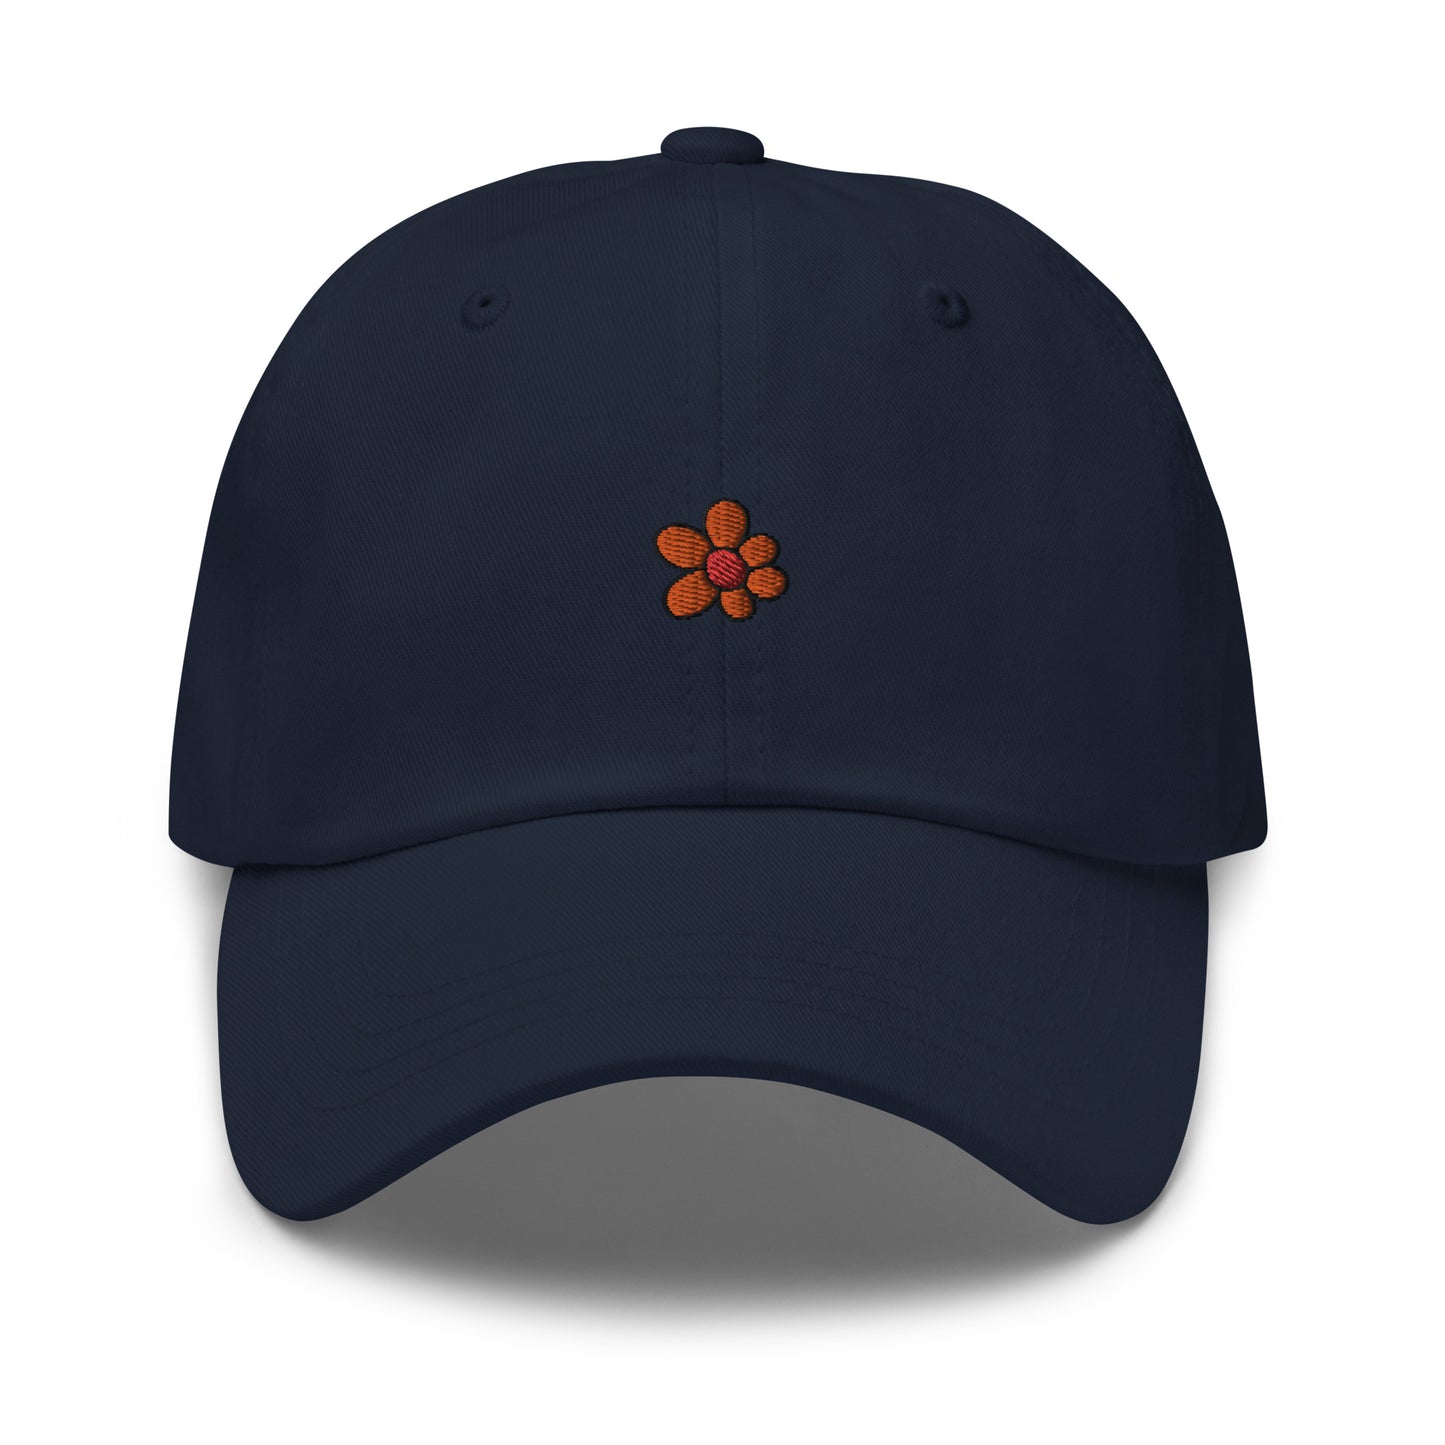 Dad Cap with Orange Flower Symbol